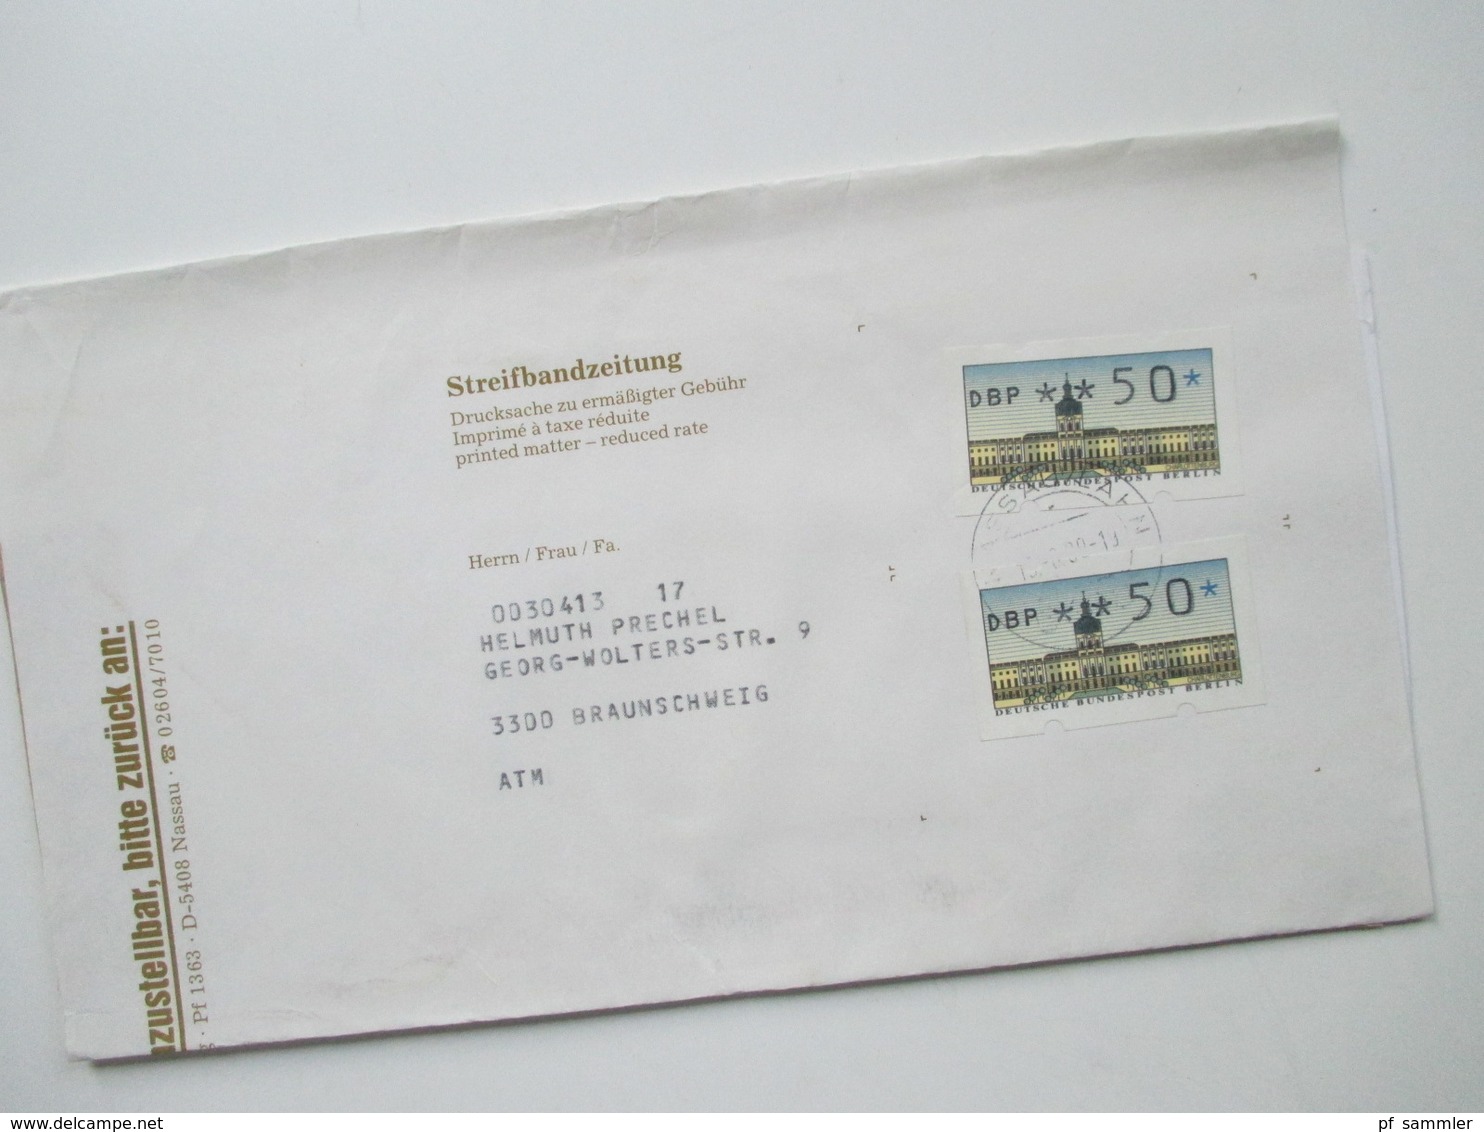 Berlin 1988 ATM / Automatenmarken auf Streifbandzeitung 15 Stück. Verschiedene Portostufen. Stöberposten